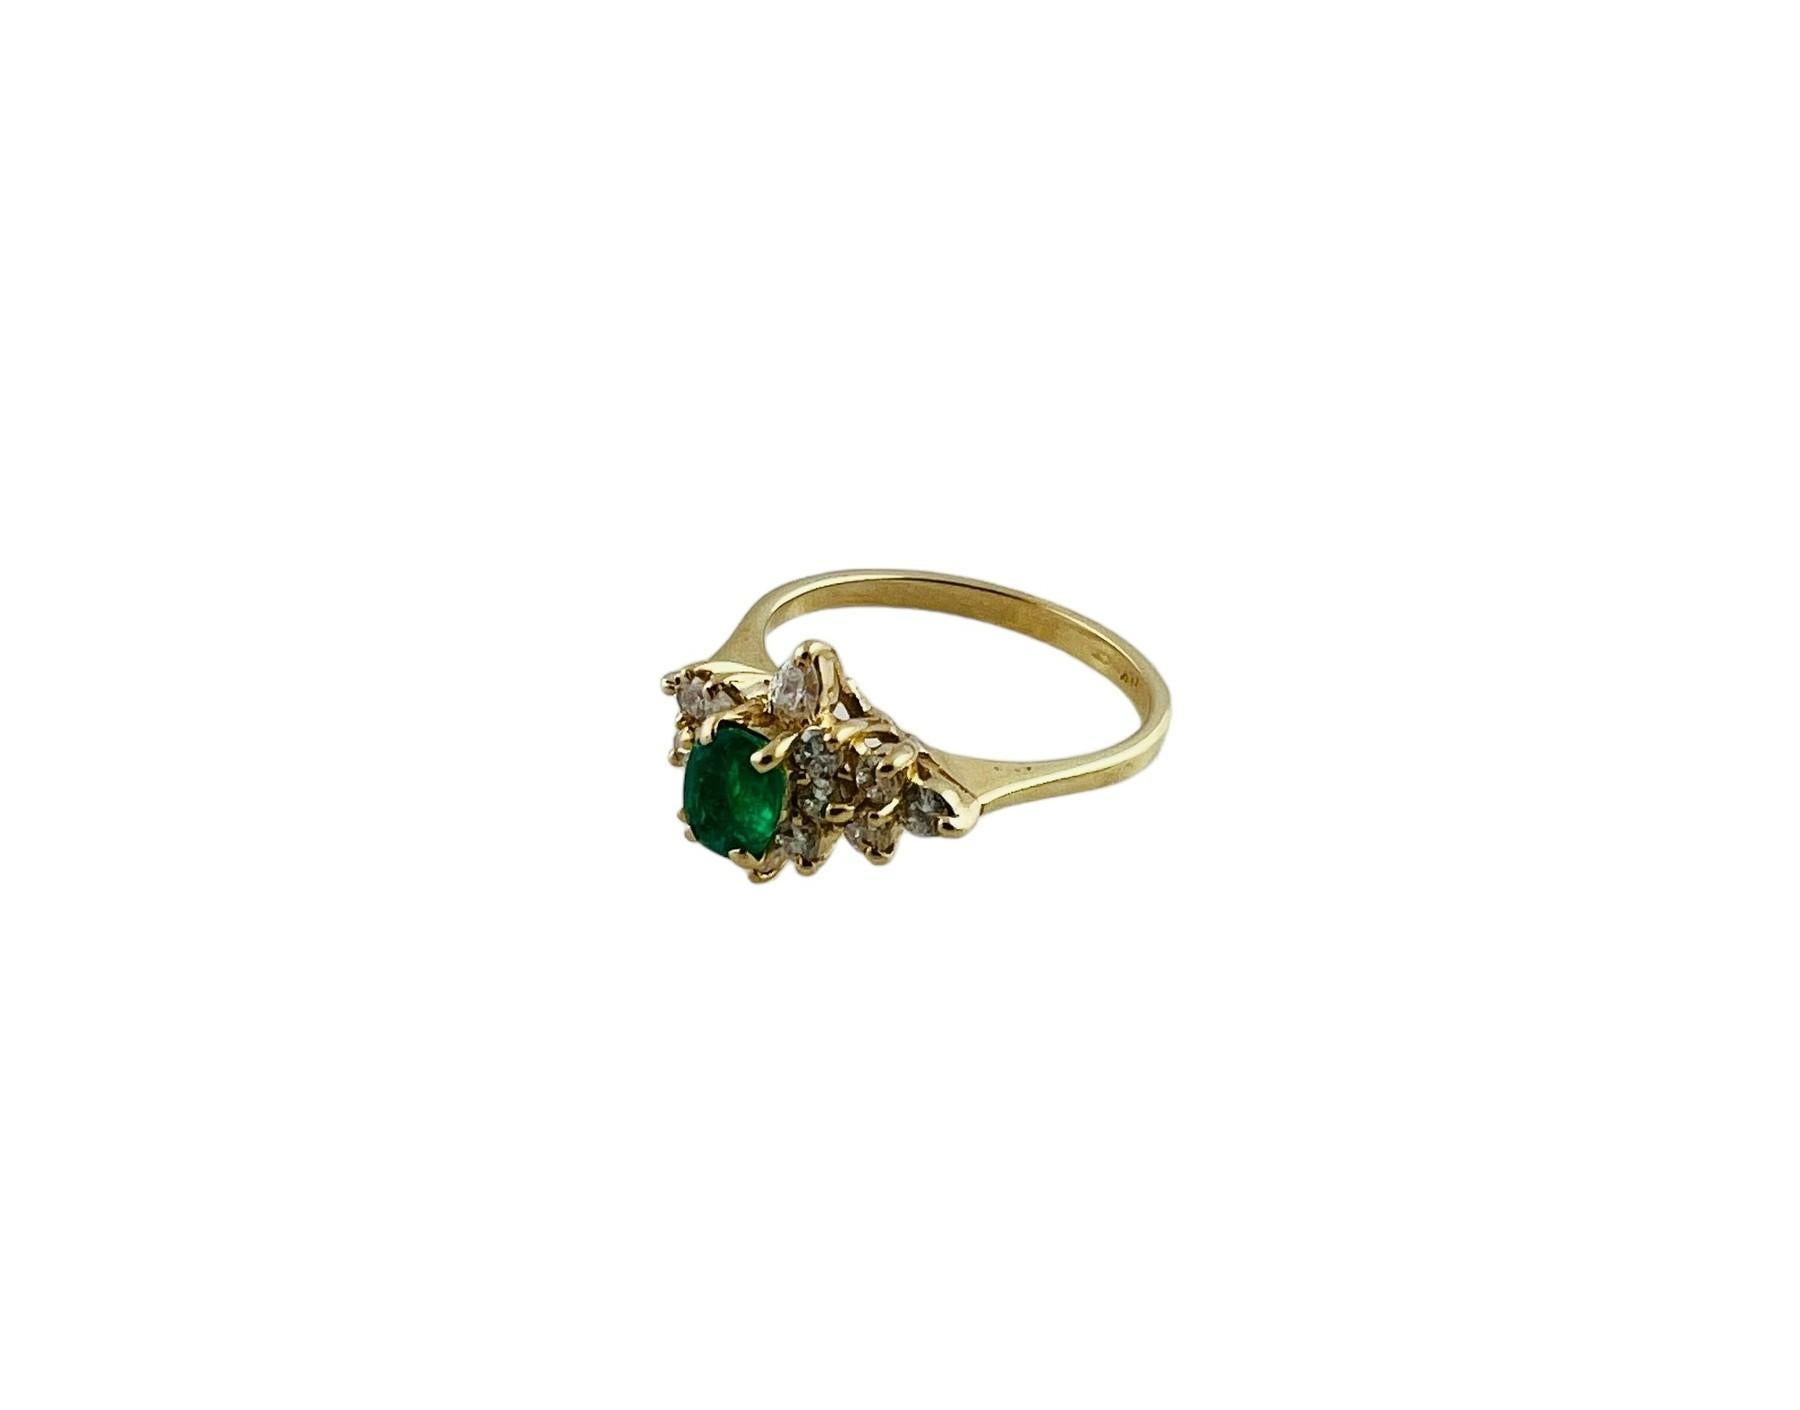 Vintage 14K Gelbgold Diamant & natürliche Smaragd Cluster Ring Größe 6,5

Dieser wunderschöne Ring im Cluster-Stil ist mit einem oval geschliffenen natürlichen Smaragd verziert, der von einem Cluster aus 12 runden Brillanten und 2 Diamanten im